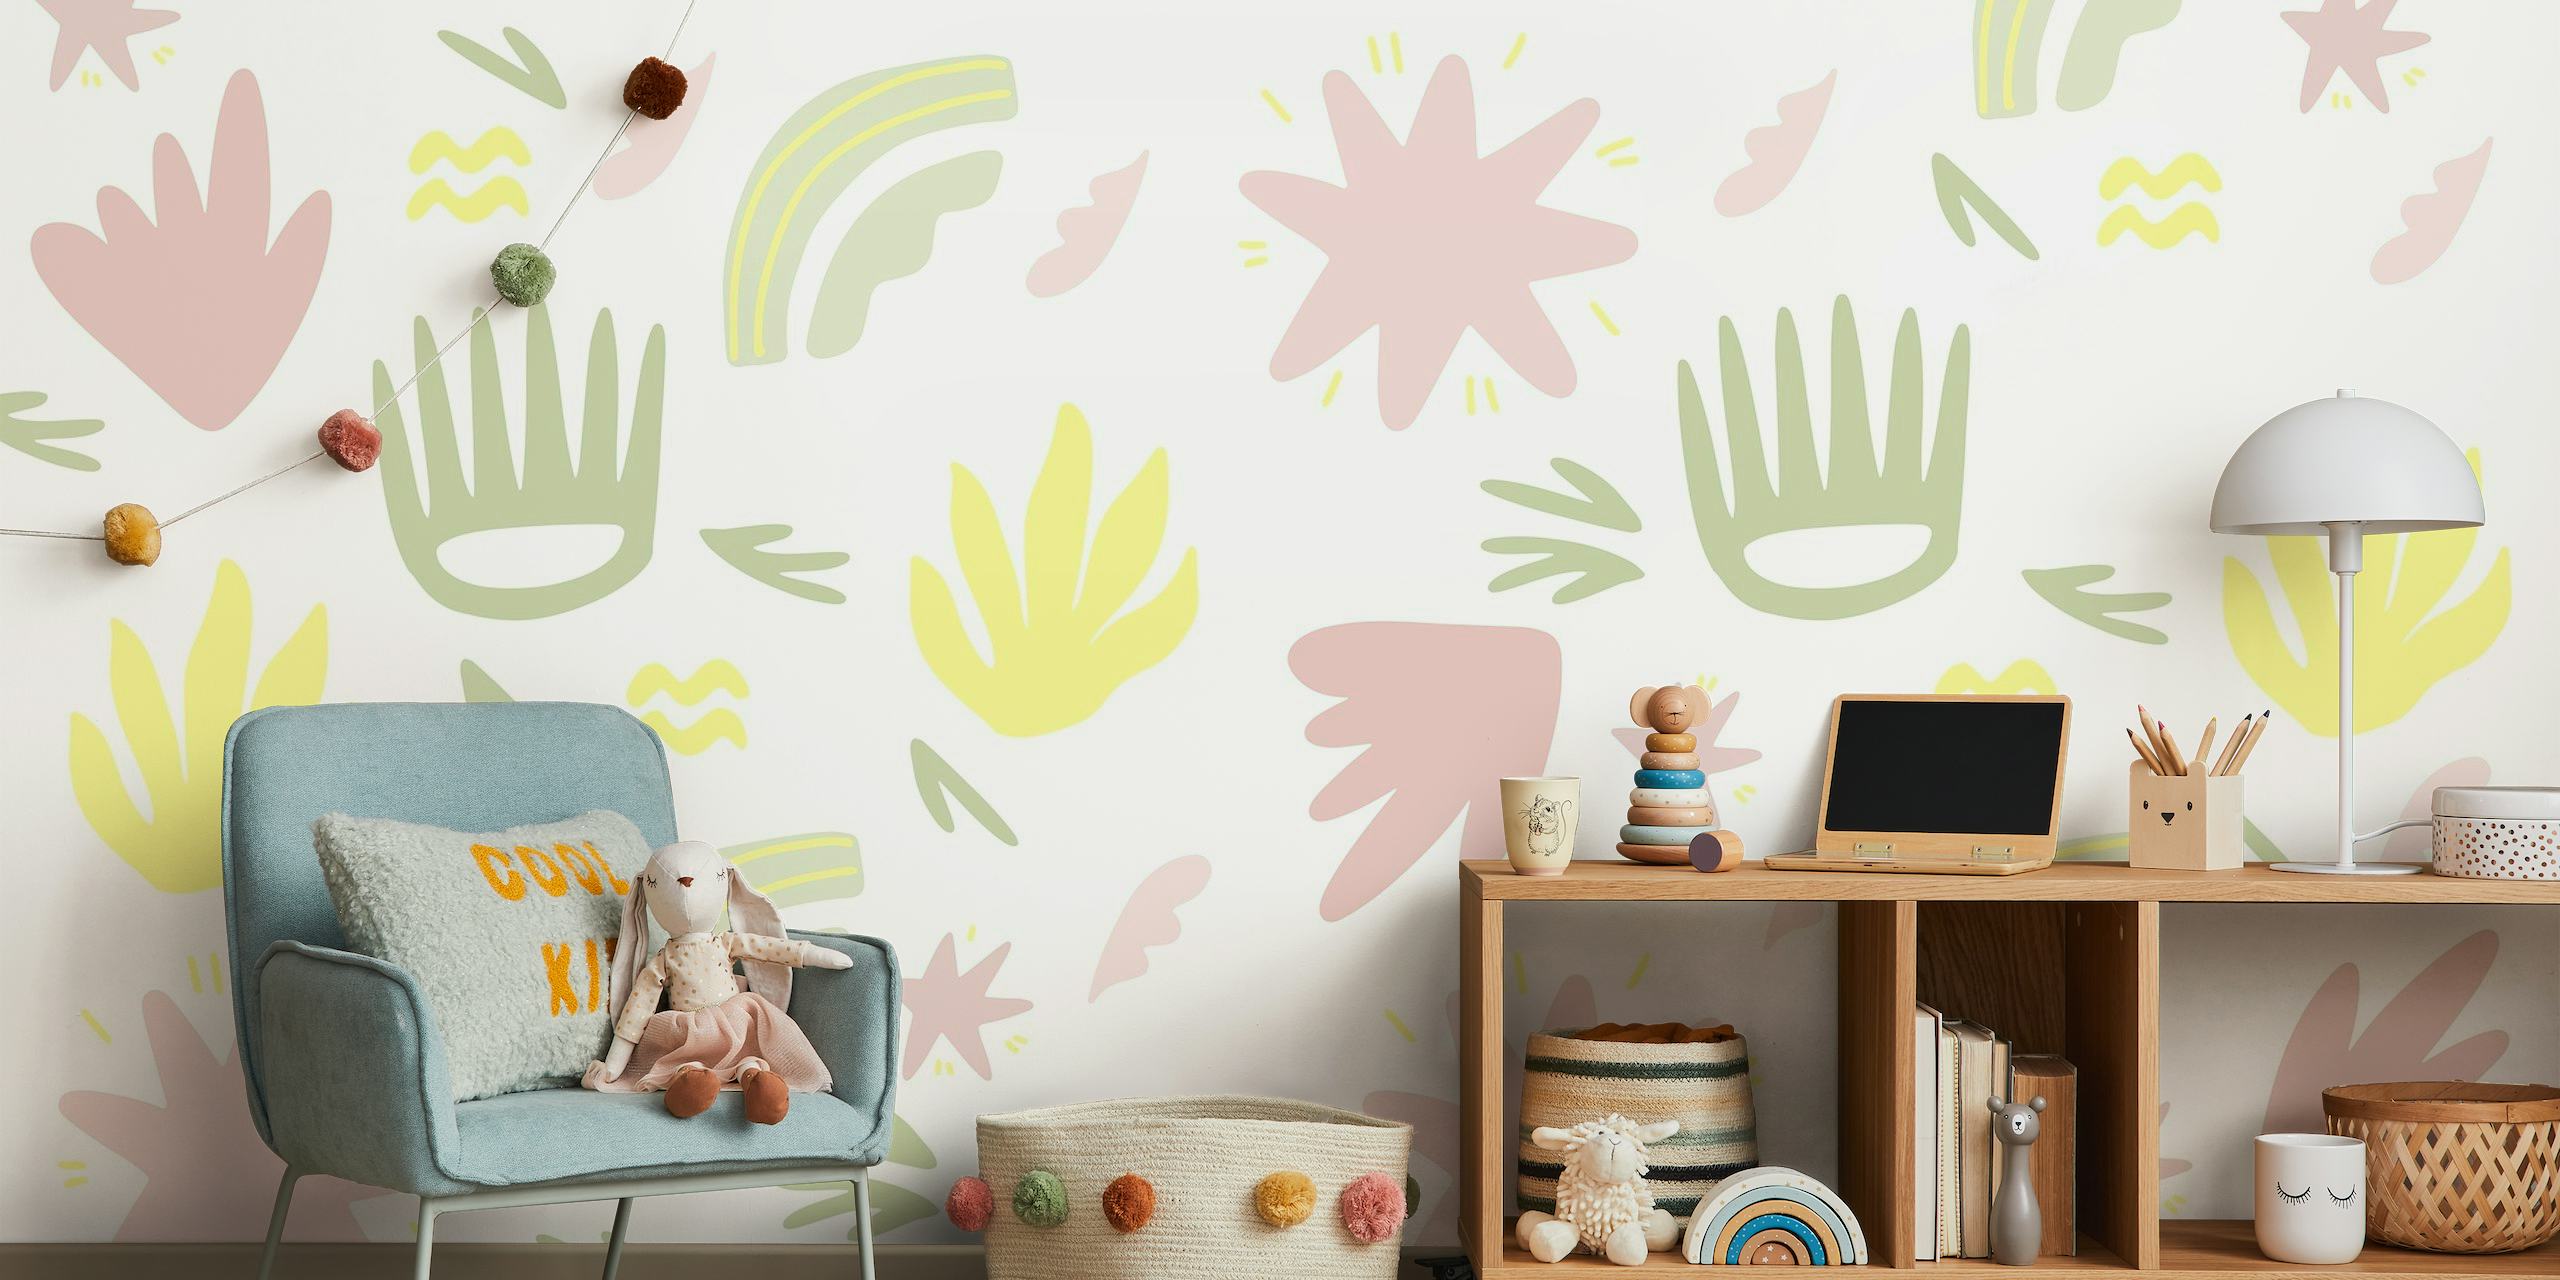 Wandbild im handgezeichneten Stil mit pastellgelben, rosa und grünen botanischen Elementen